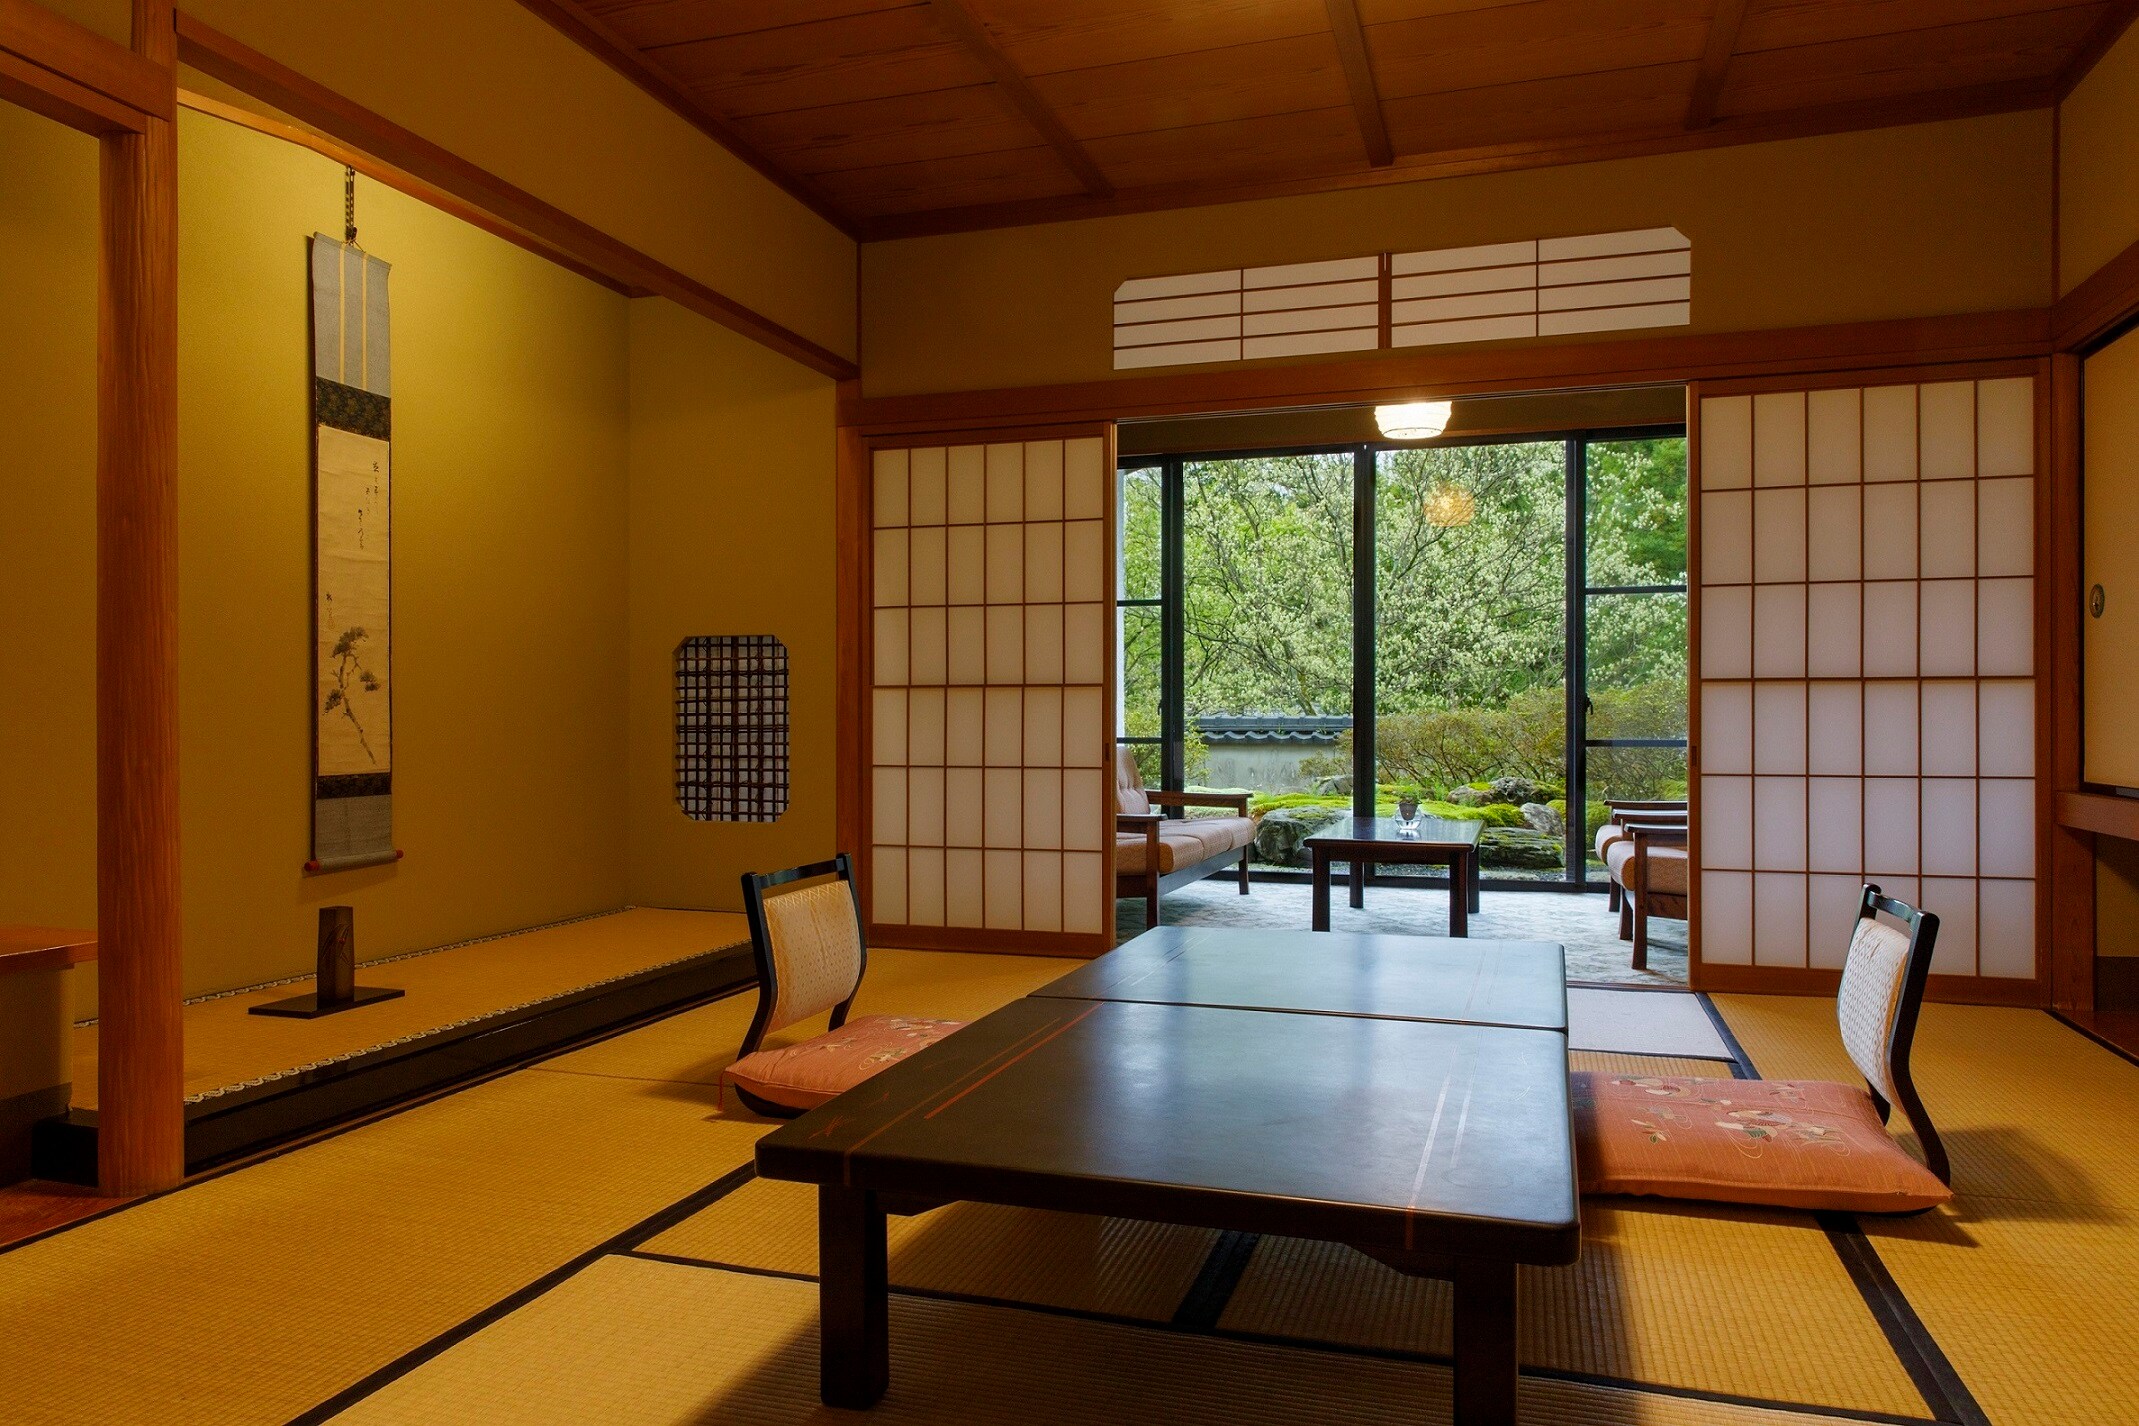 [Bangunan utama: Kamar bergaya Jepang 10 hingga 12,5 tikar tatami] (Contoh) Kamar bergaya Jepang murni dengan tampilan yang tenang.